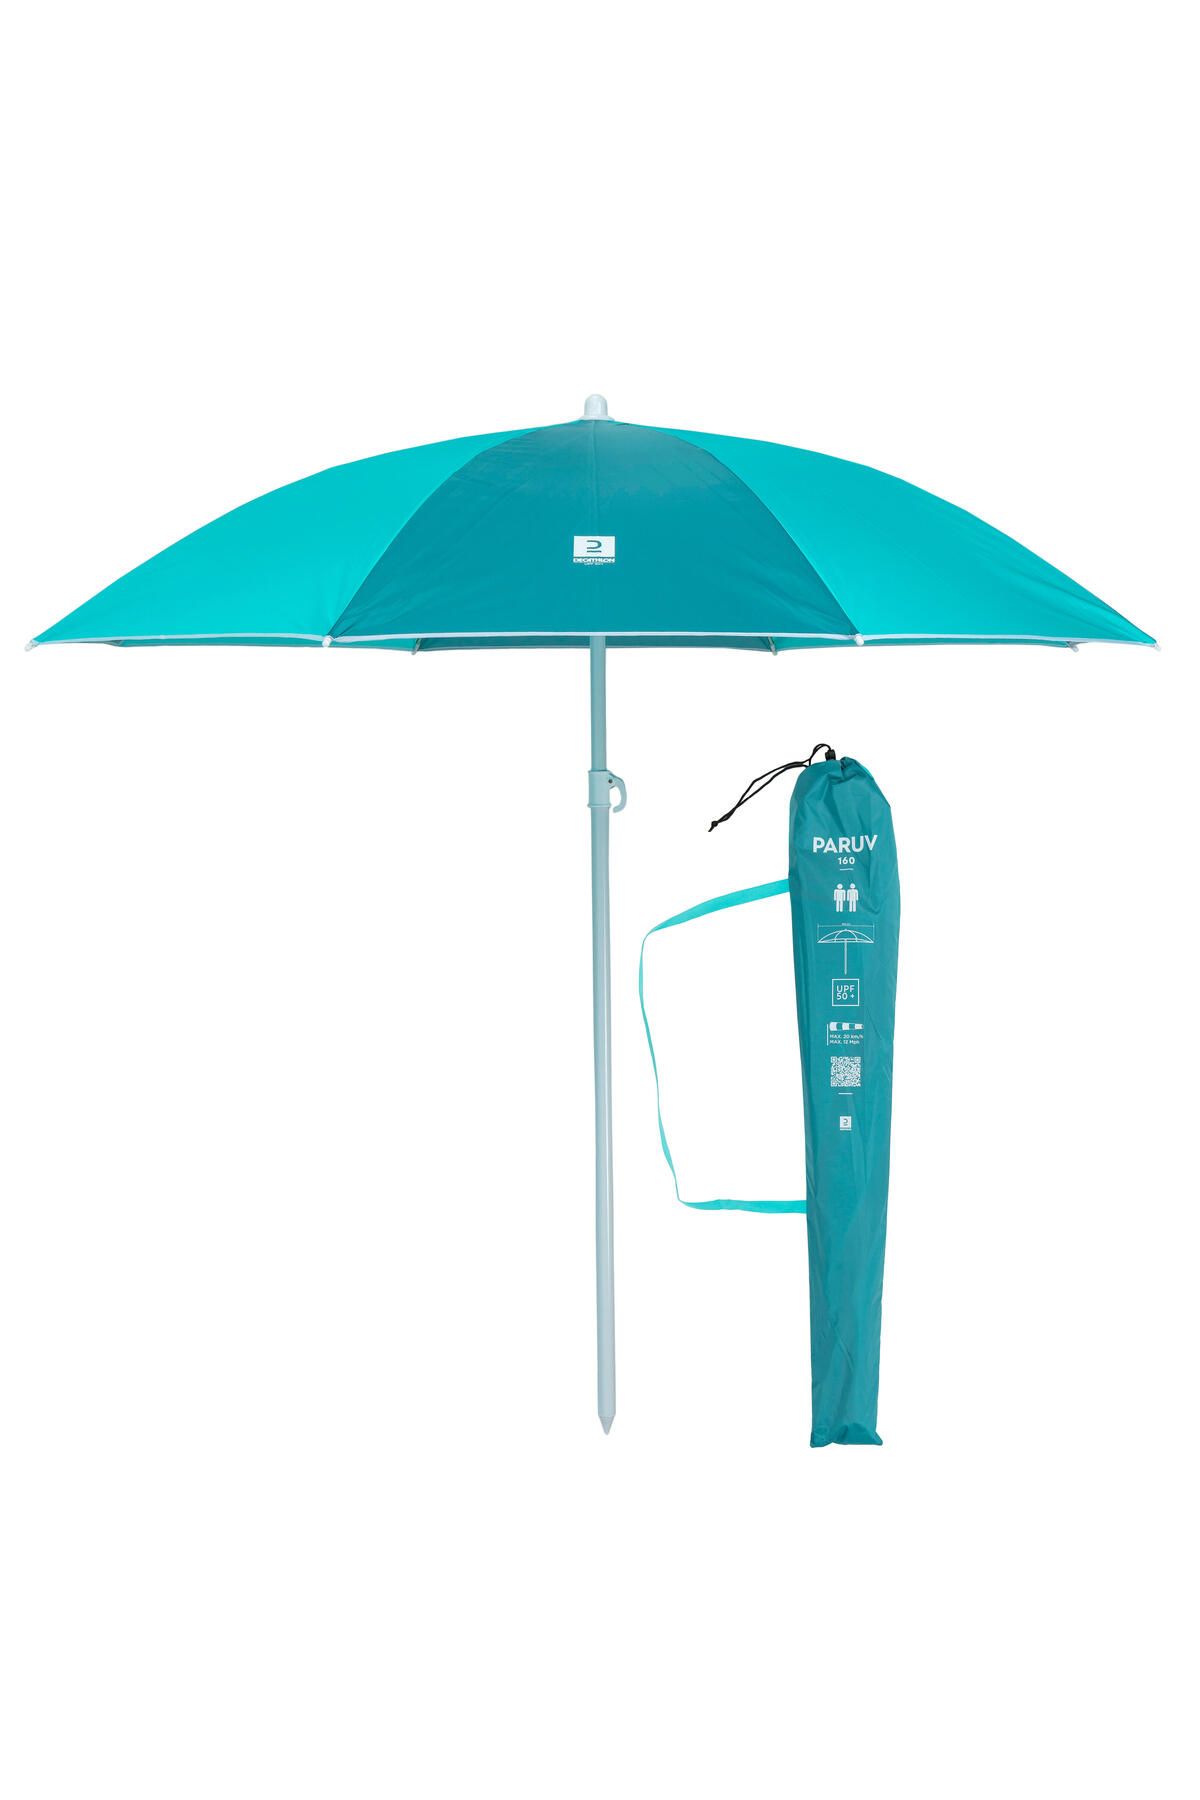 Decathlon Plaj Şemsiyesi - SPF50+ - 2 Kişilik - Mavi/Yeşil - Paruv 160